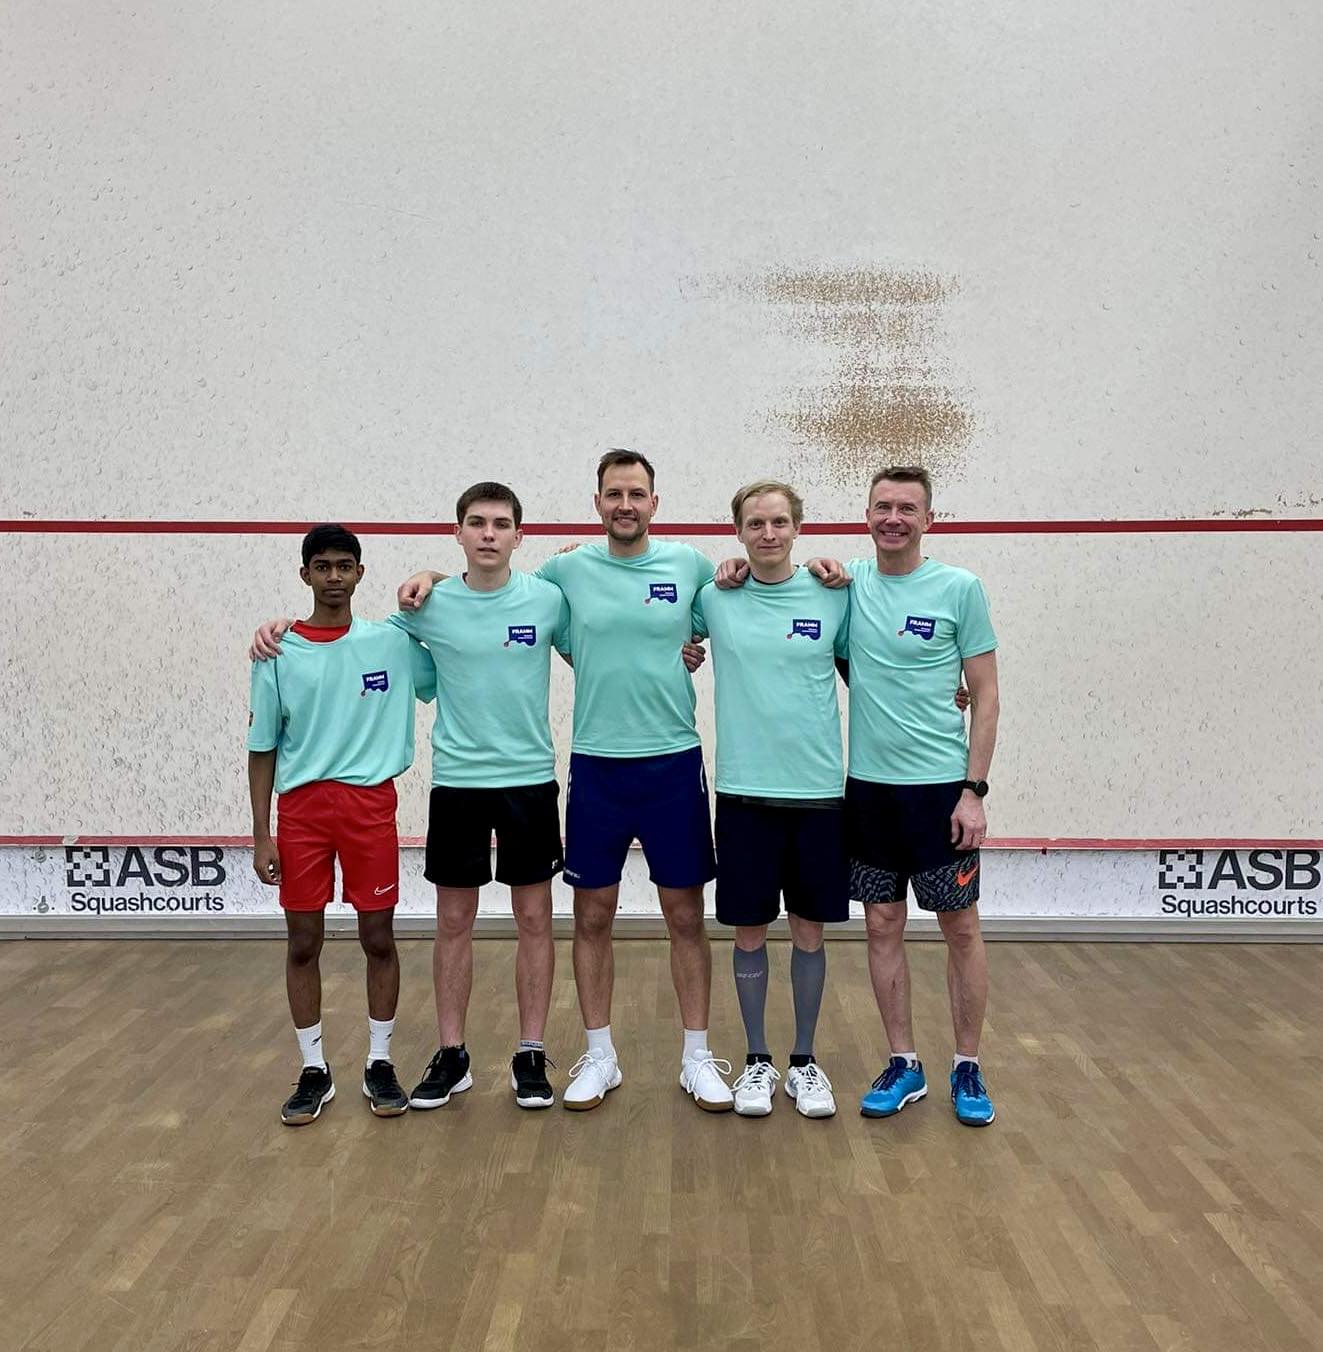 9ndal märtsil toimus Eesti-Läti-Leedu võistkondlik turniir squashis, mis tähendab, et iga riiki esindab 5 meest ja 3 naist ning omavahel mängivad vastavalt riik